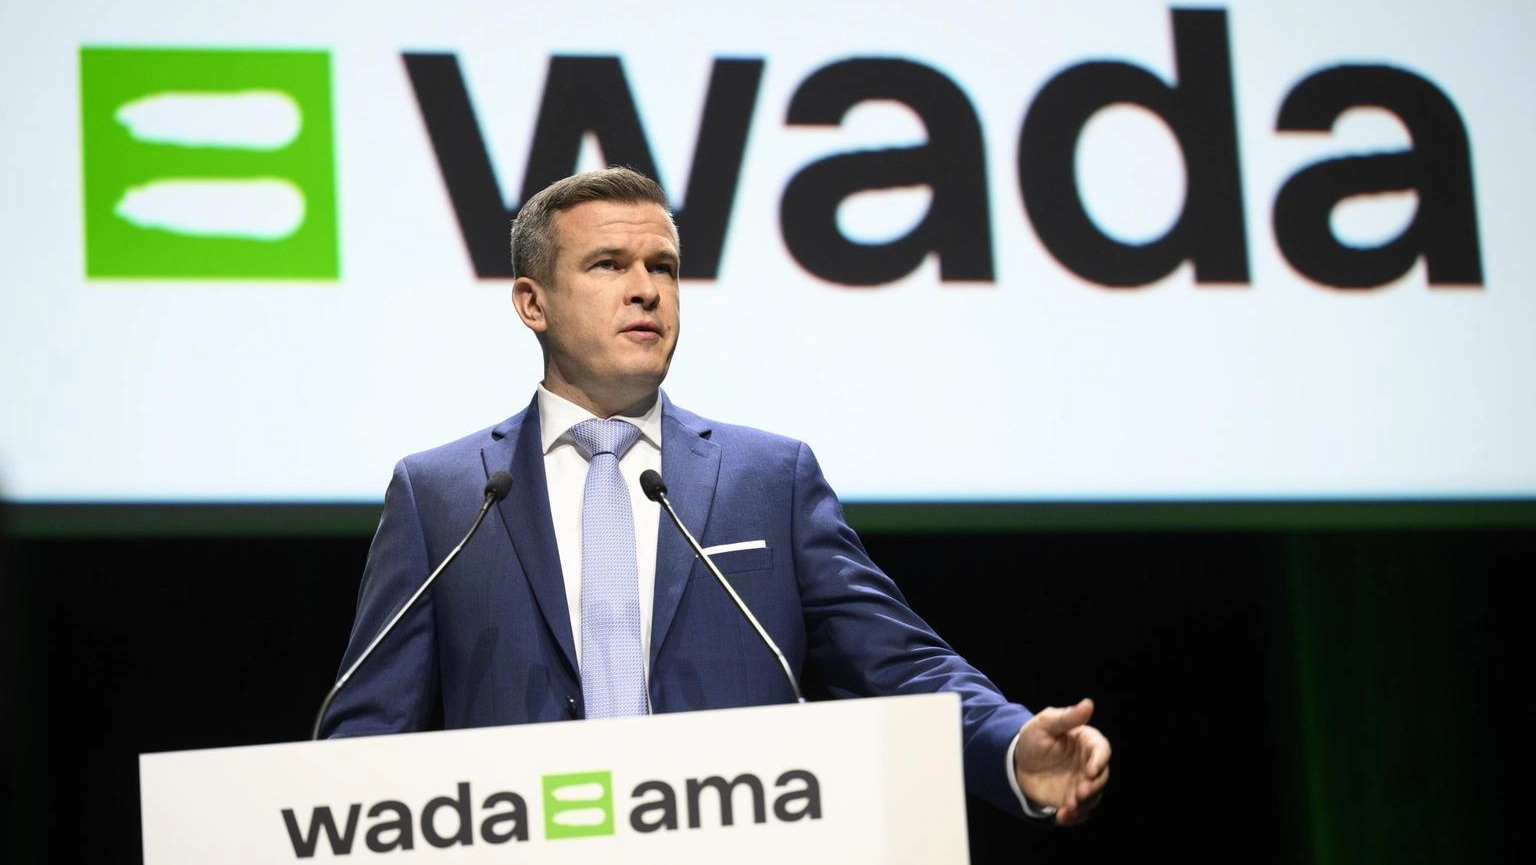 La Wada, l'agenzia mondiale per il controllo antidoping